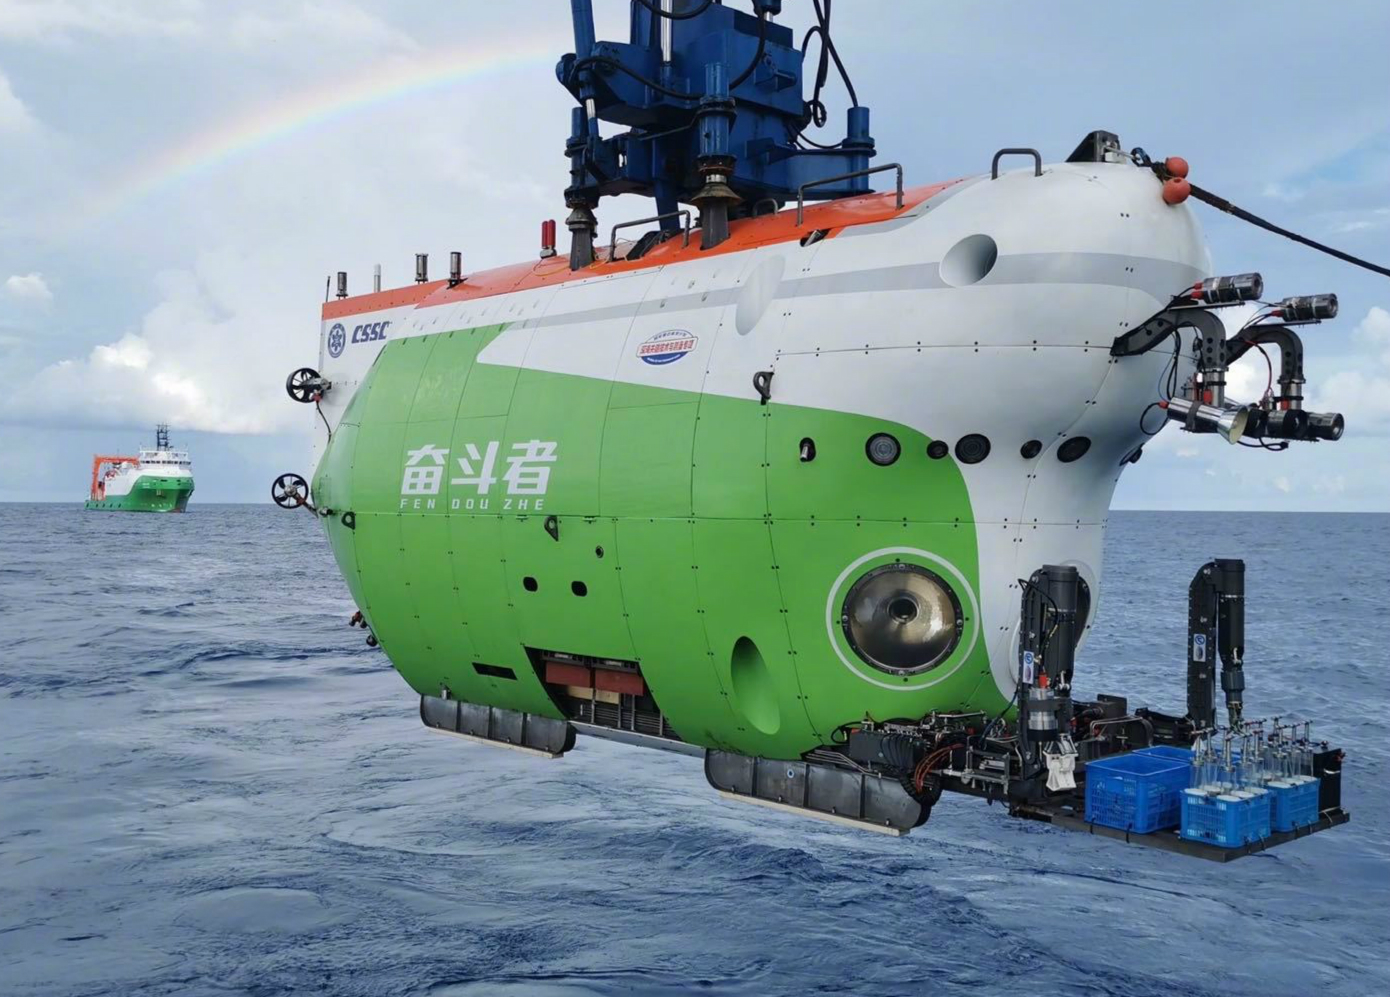 自制仿真潜水艇 diy创意科技小制作手工 科学潜水沉浮实验 邢老师-阿里巴巴